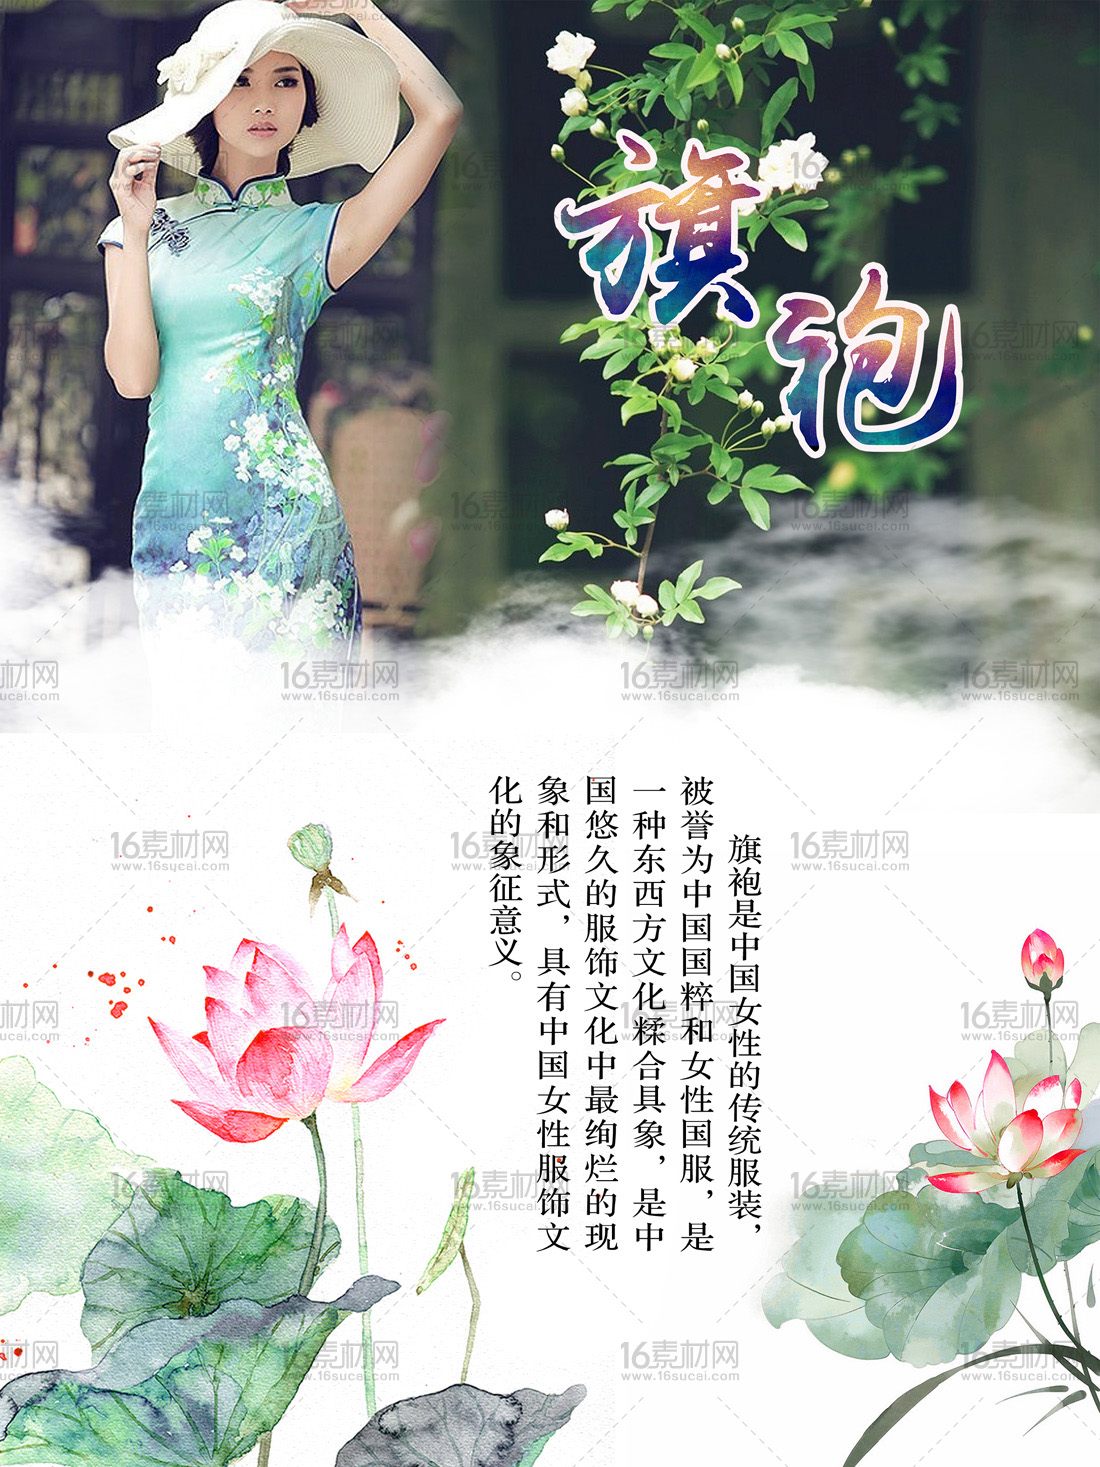 中国风旗袍文化宣传海报psd分层素材